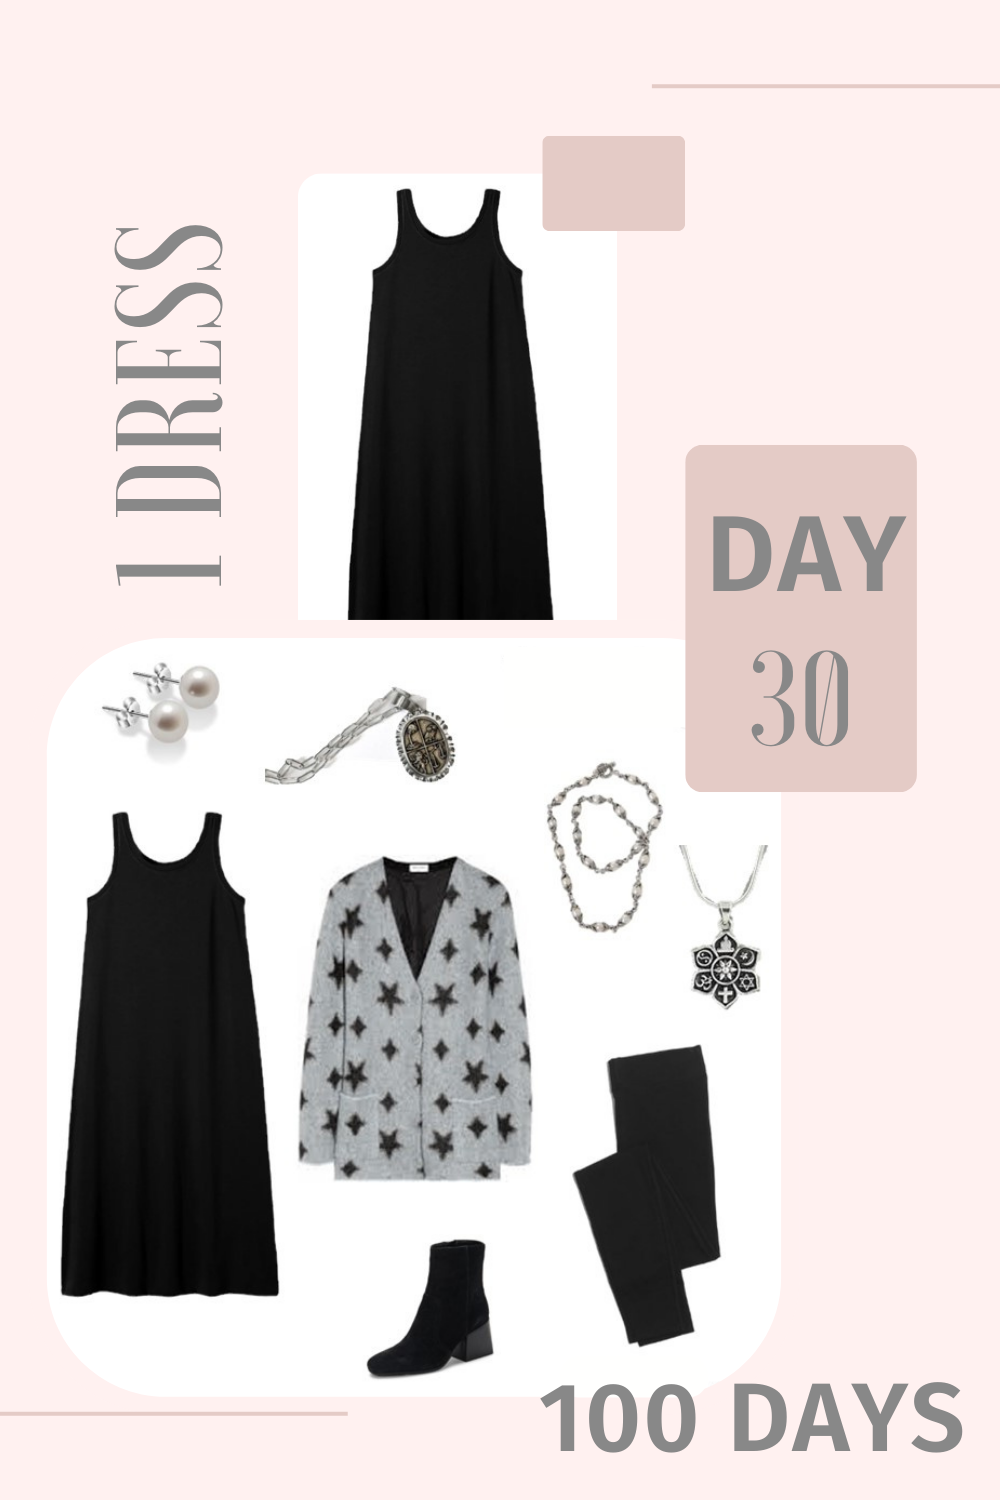 1 Dress 100 Days - Day 30